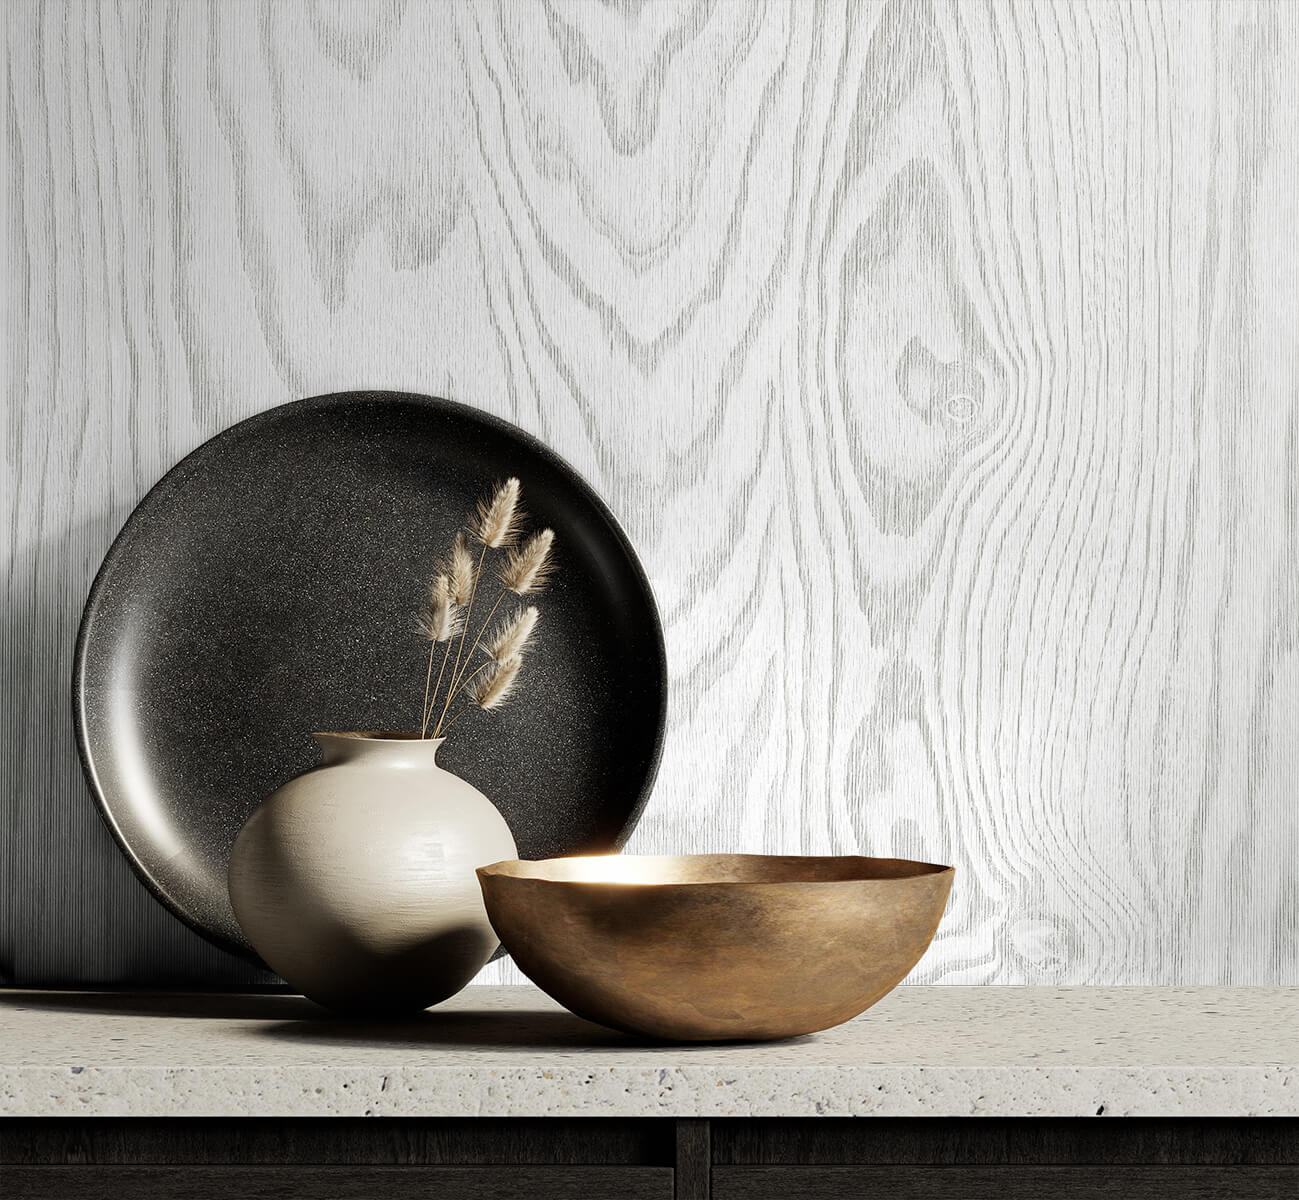 White Heron Kyoto Faux Woodgrain Wallpaper - Modern Wash